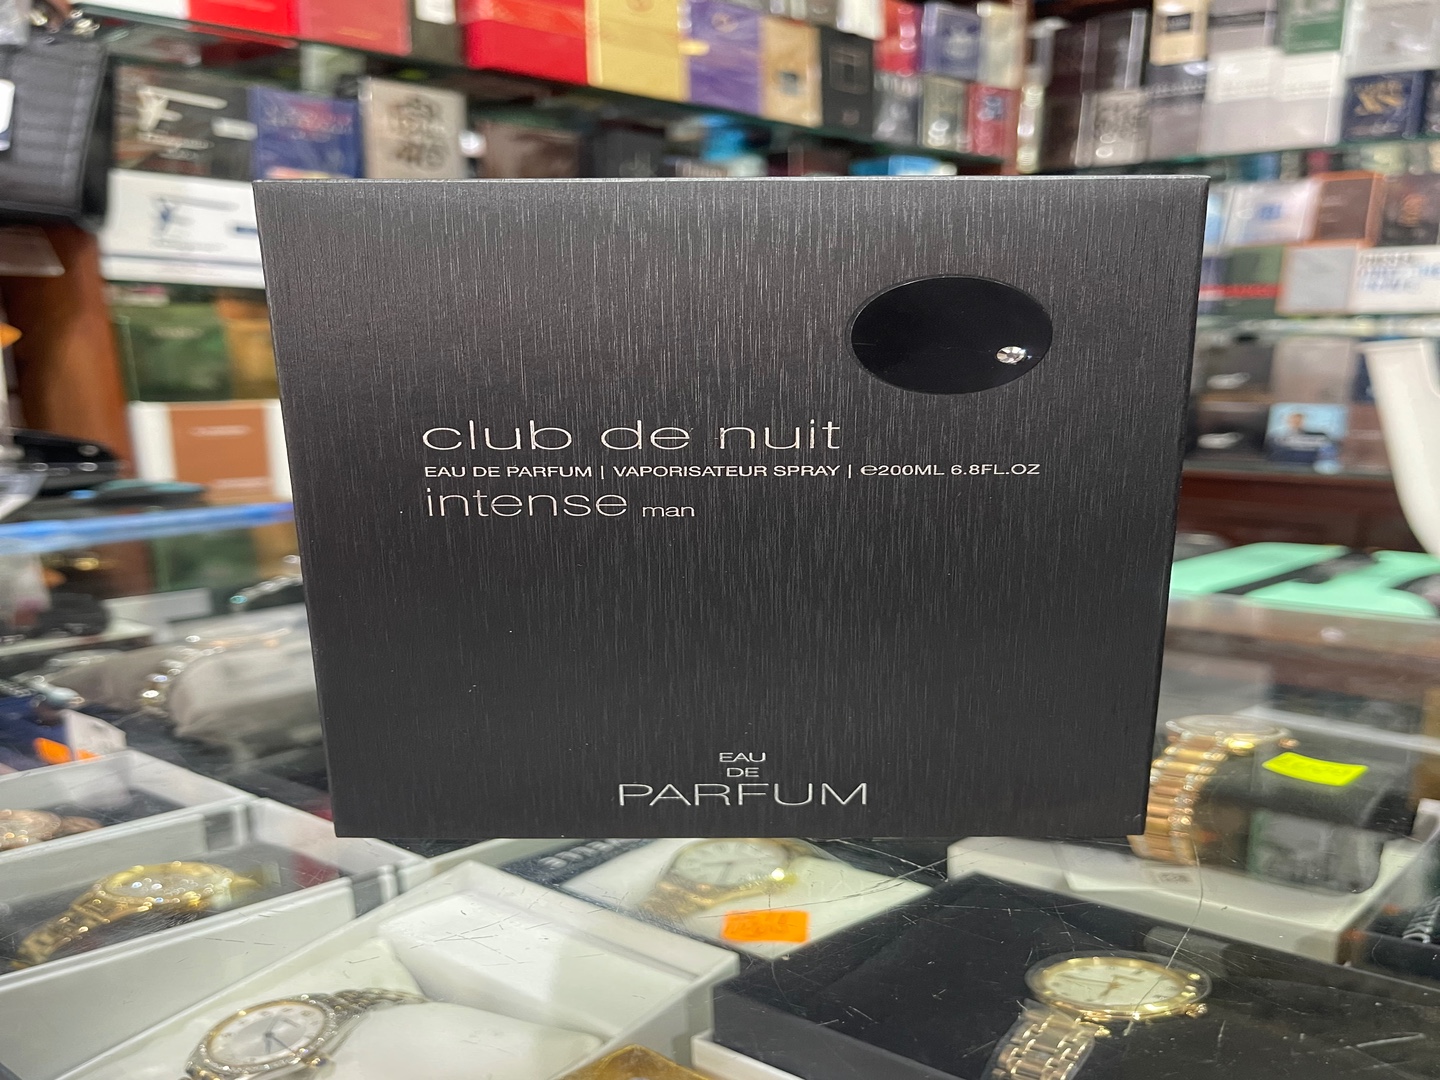 salud y belleza - Perfume Club de Nuit Intense EDP, 200mL - AL POR MAYOR Y AL DETALLE 0